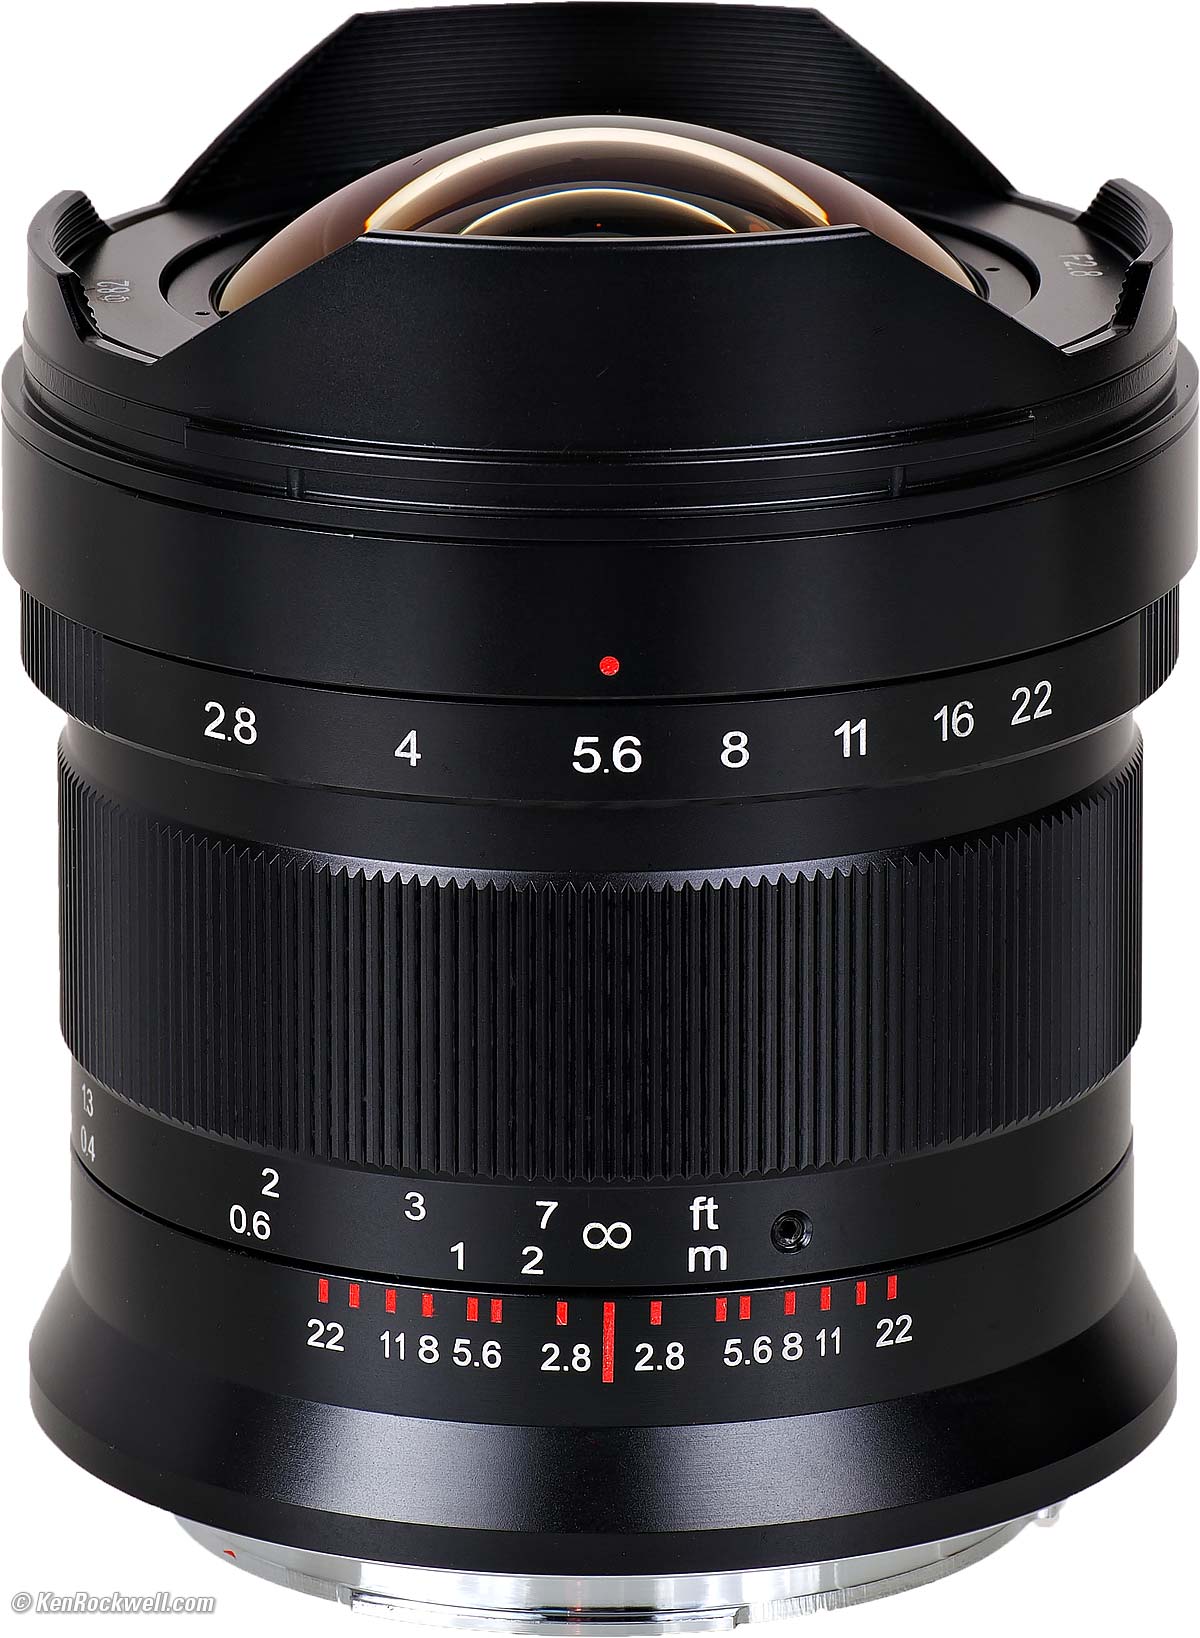 Fujifilm's Instax Wide 300 Instant Film Camera has two focus zones at $75  (Reg. $90+)